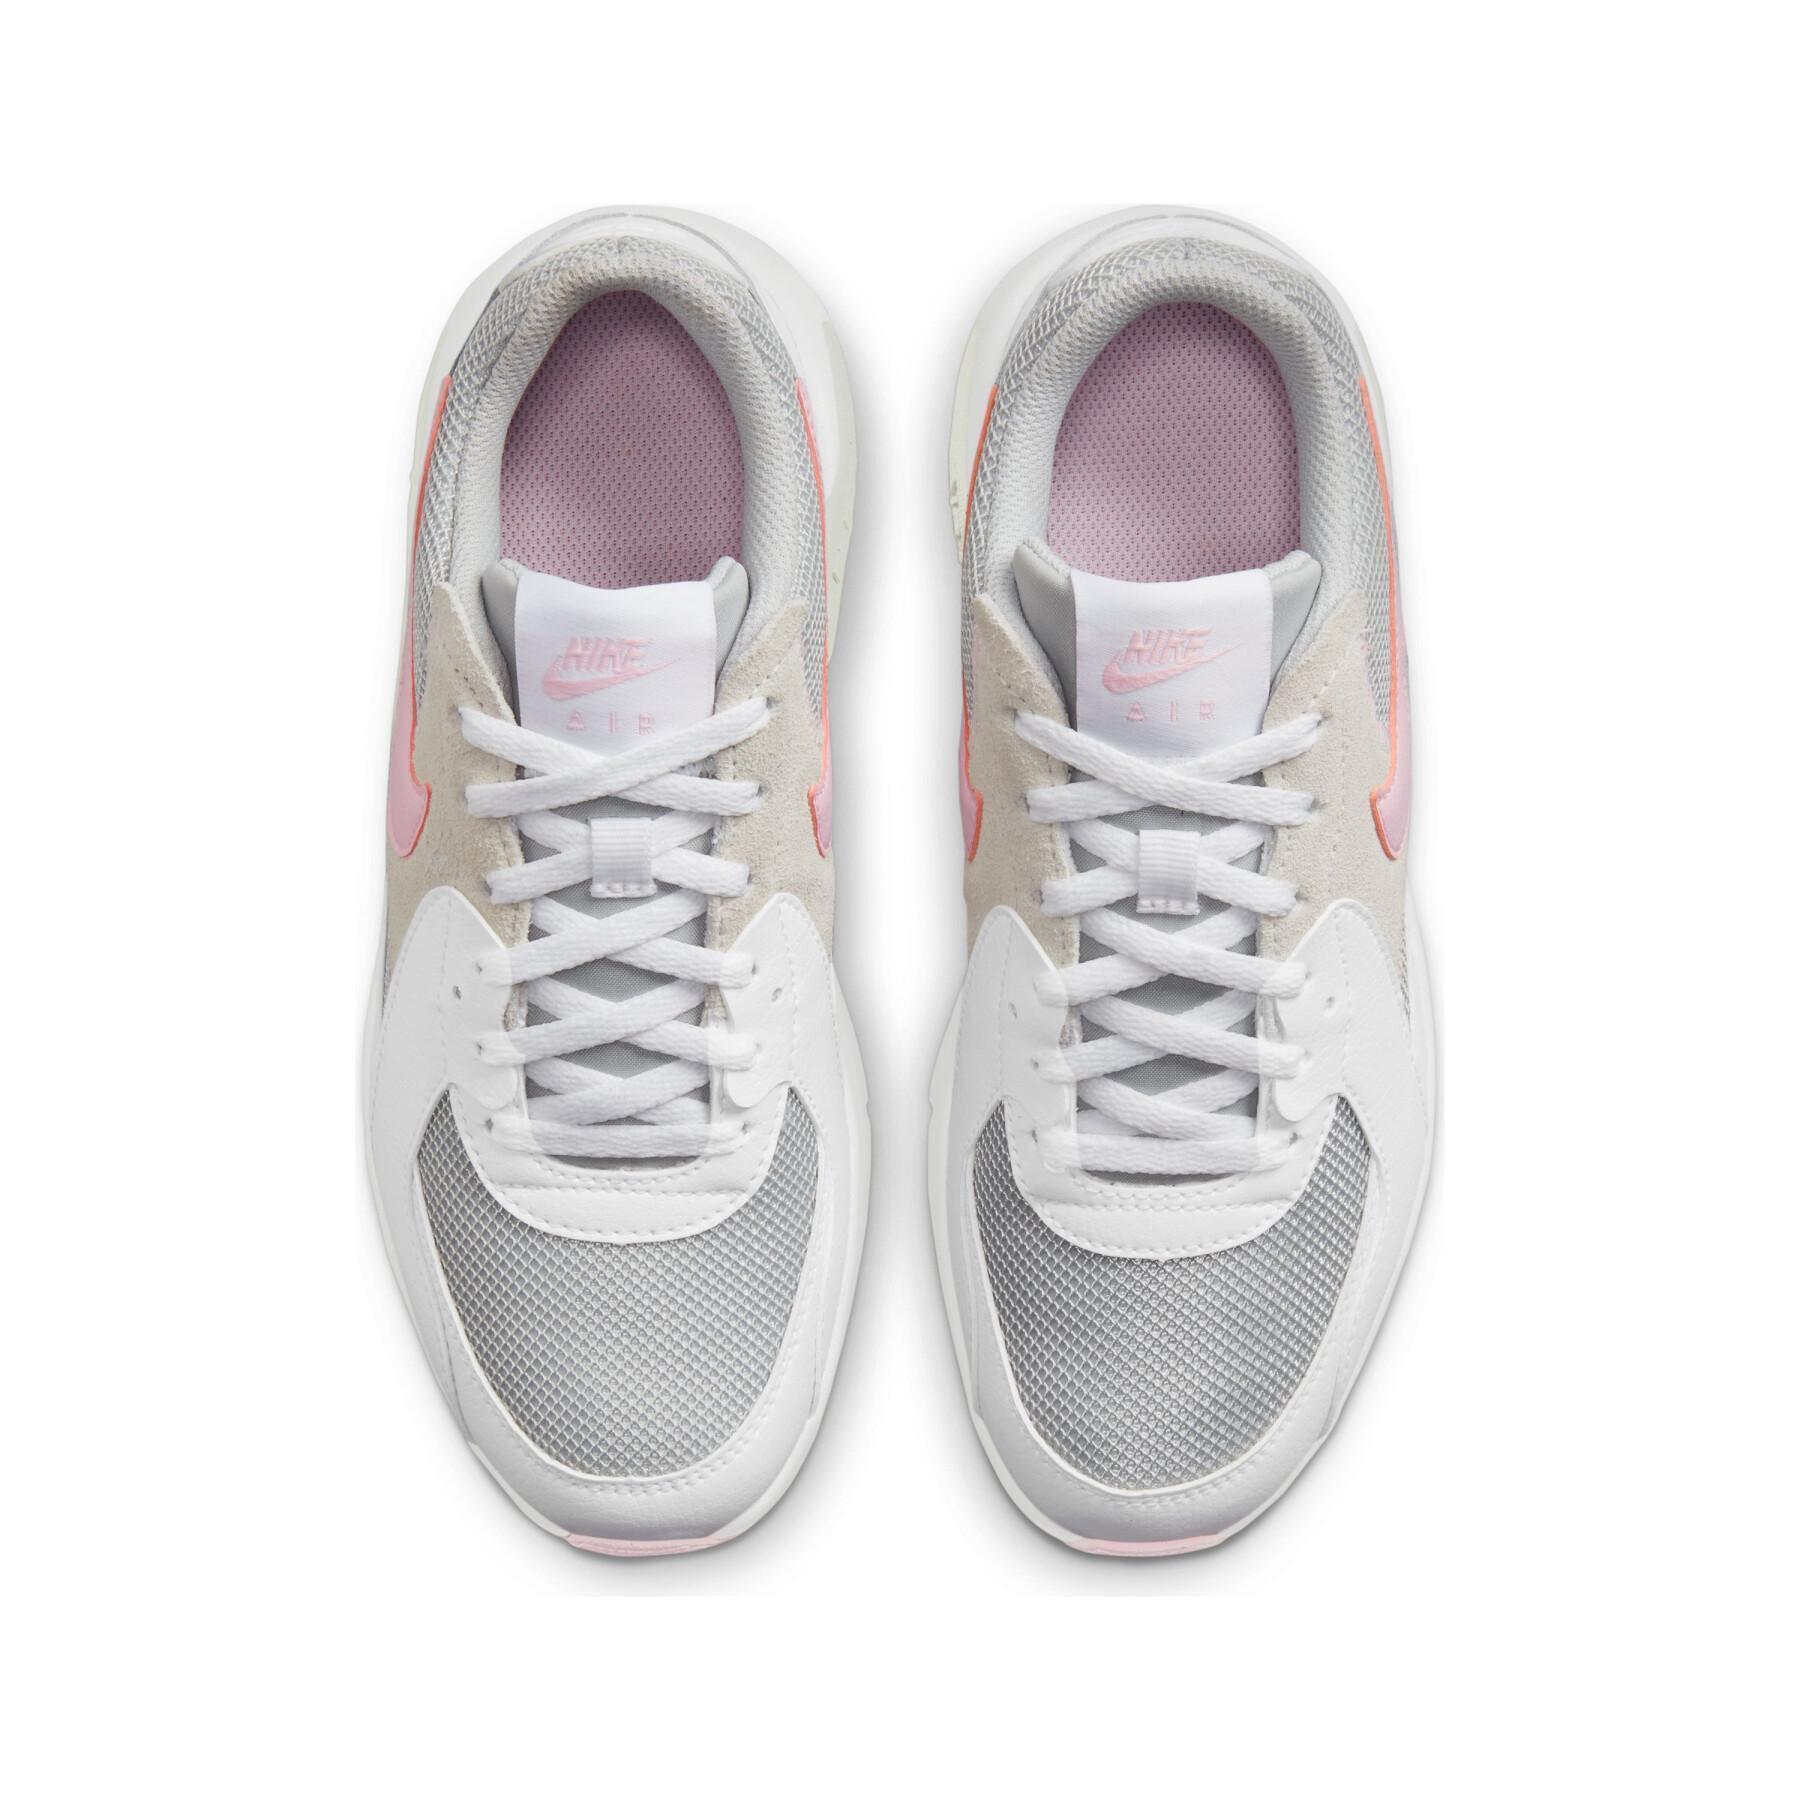 Skor för barn Nike Air Max Excee